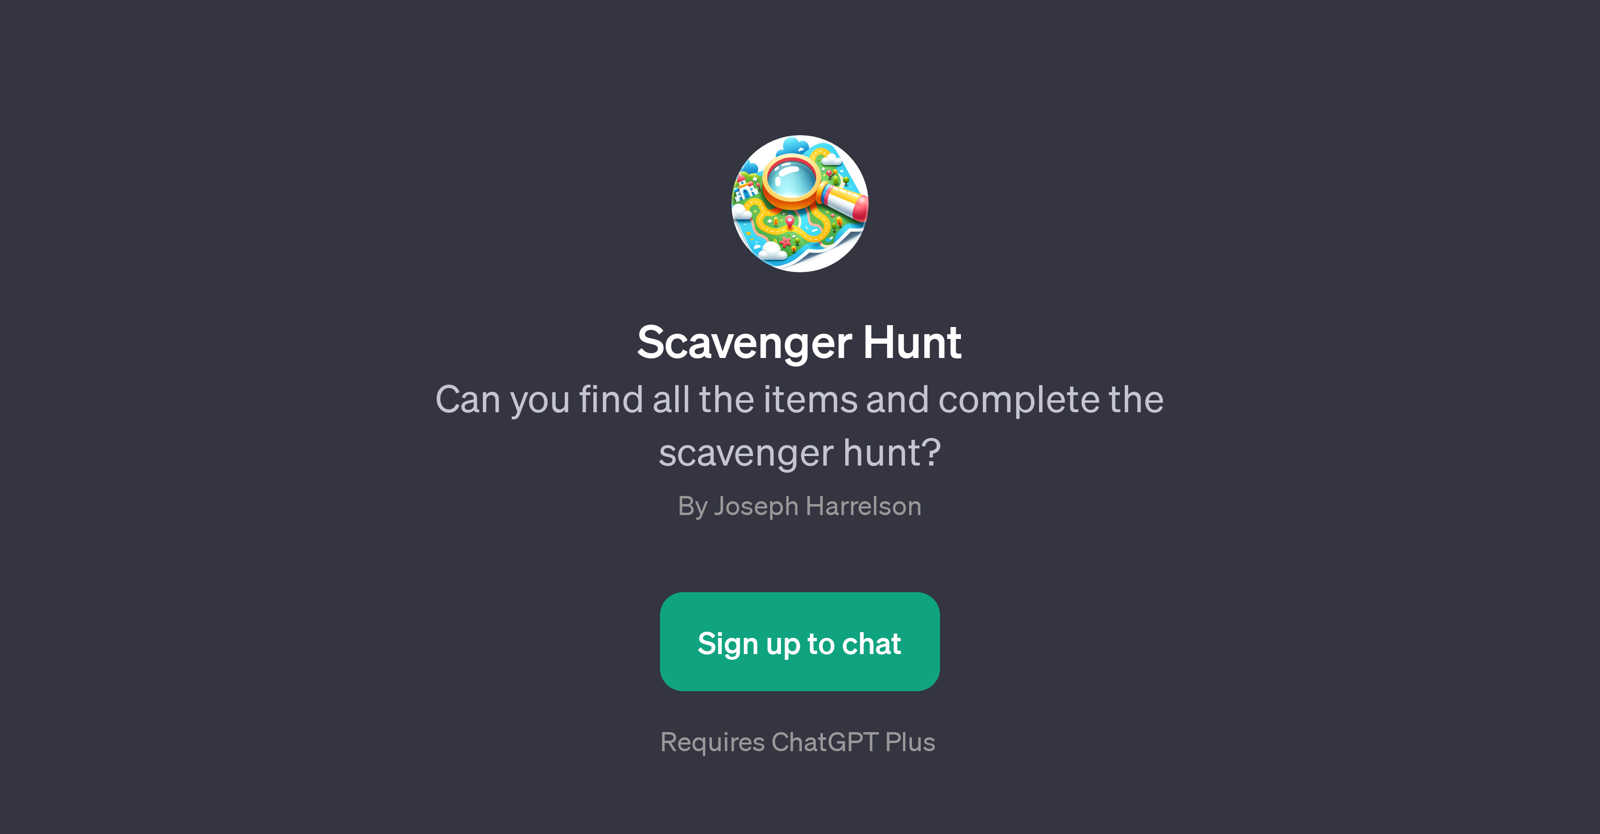 Scavenger Hunt website